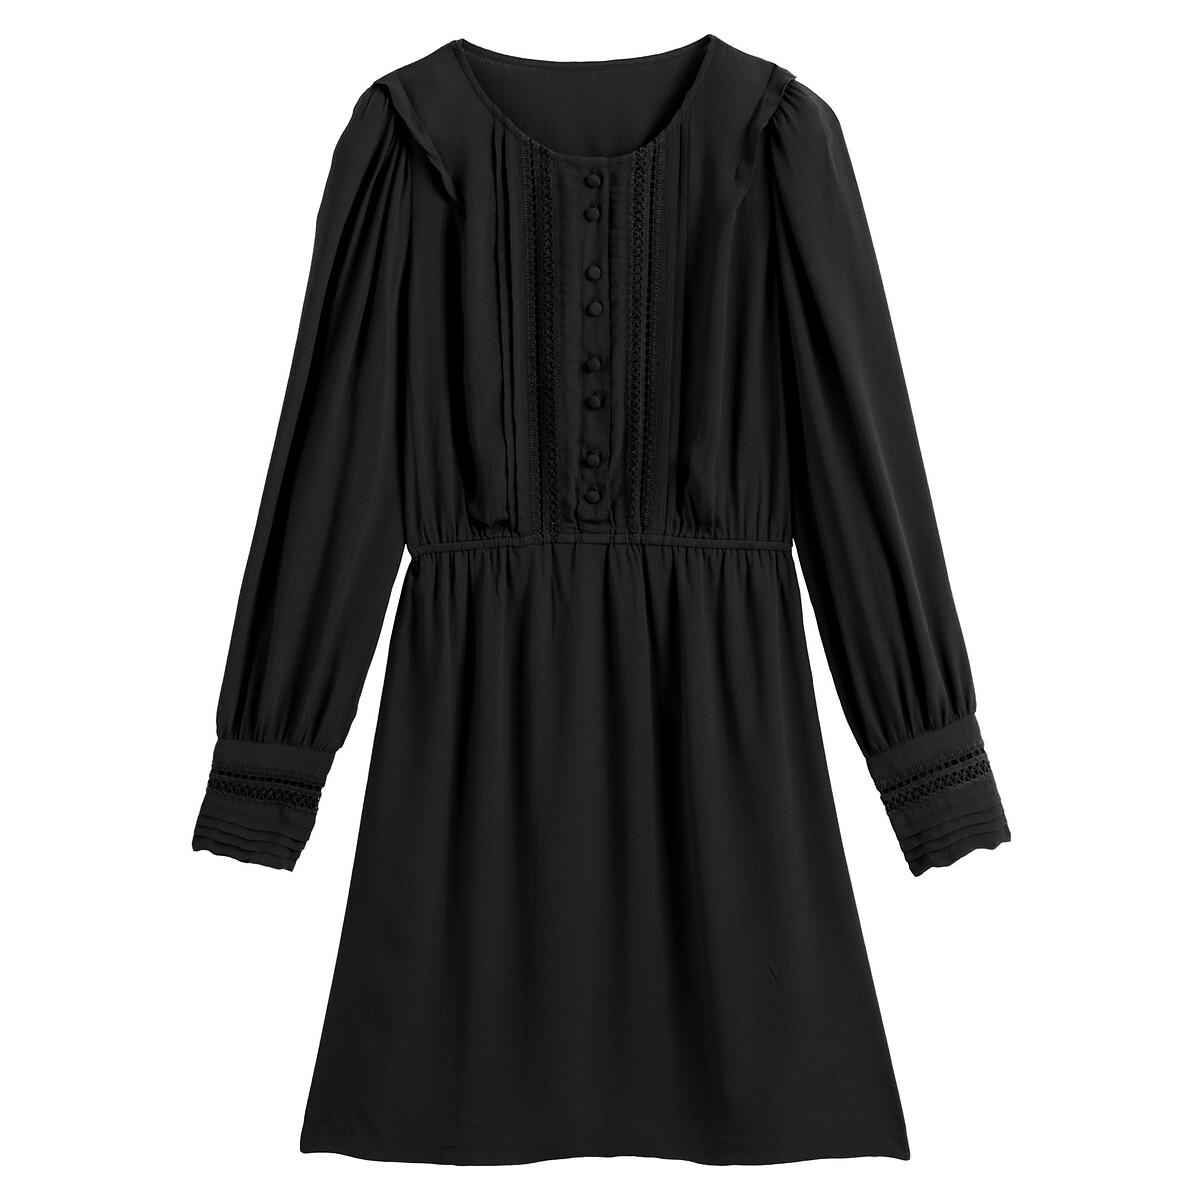 Платье La Redoute Расклешенное короткое кружевные вставки 46 (FR) - 52 (RUS) черный, размер 46 (FR) - 52 (RUS) Расклешенное короткое кружевные вставки 46 (FR) - 52 (RUS) черный - фото 5